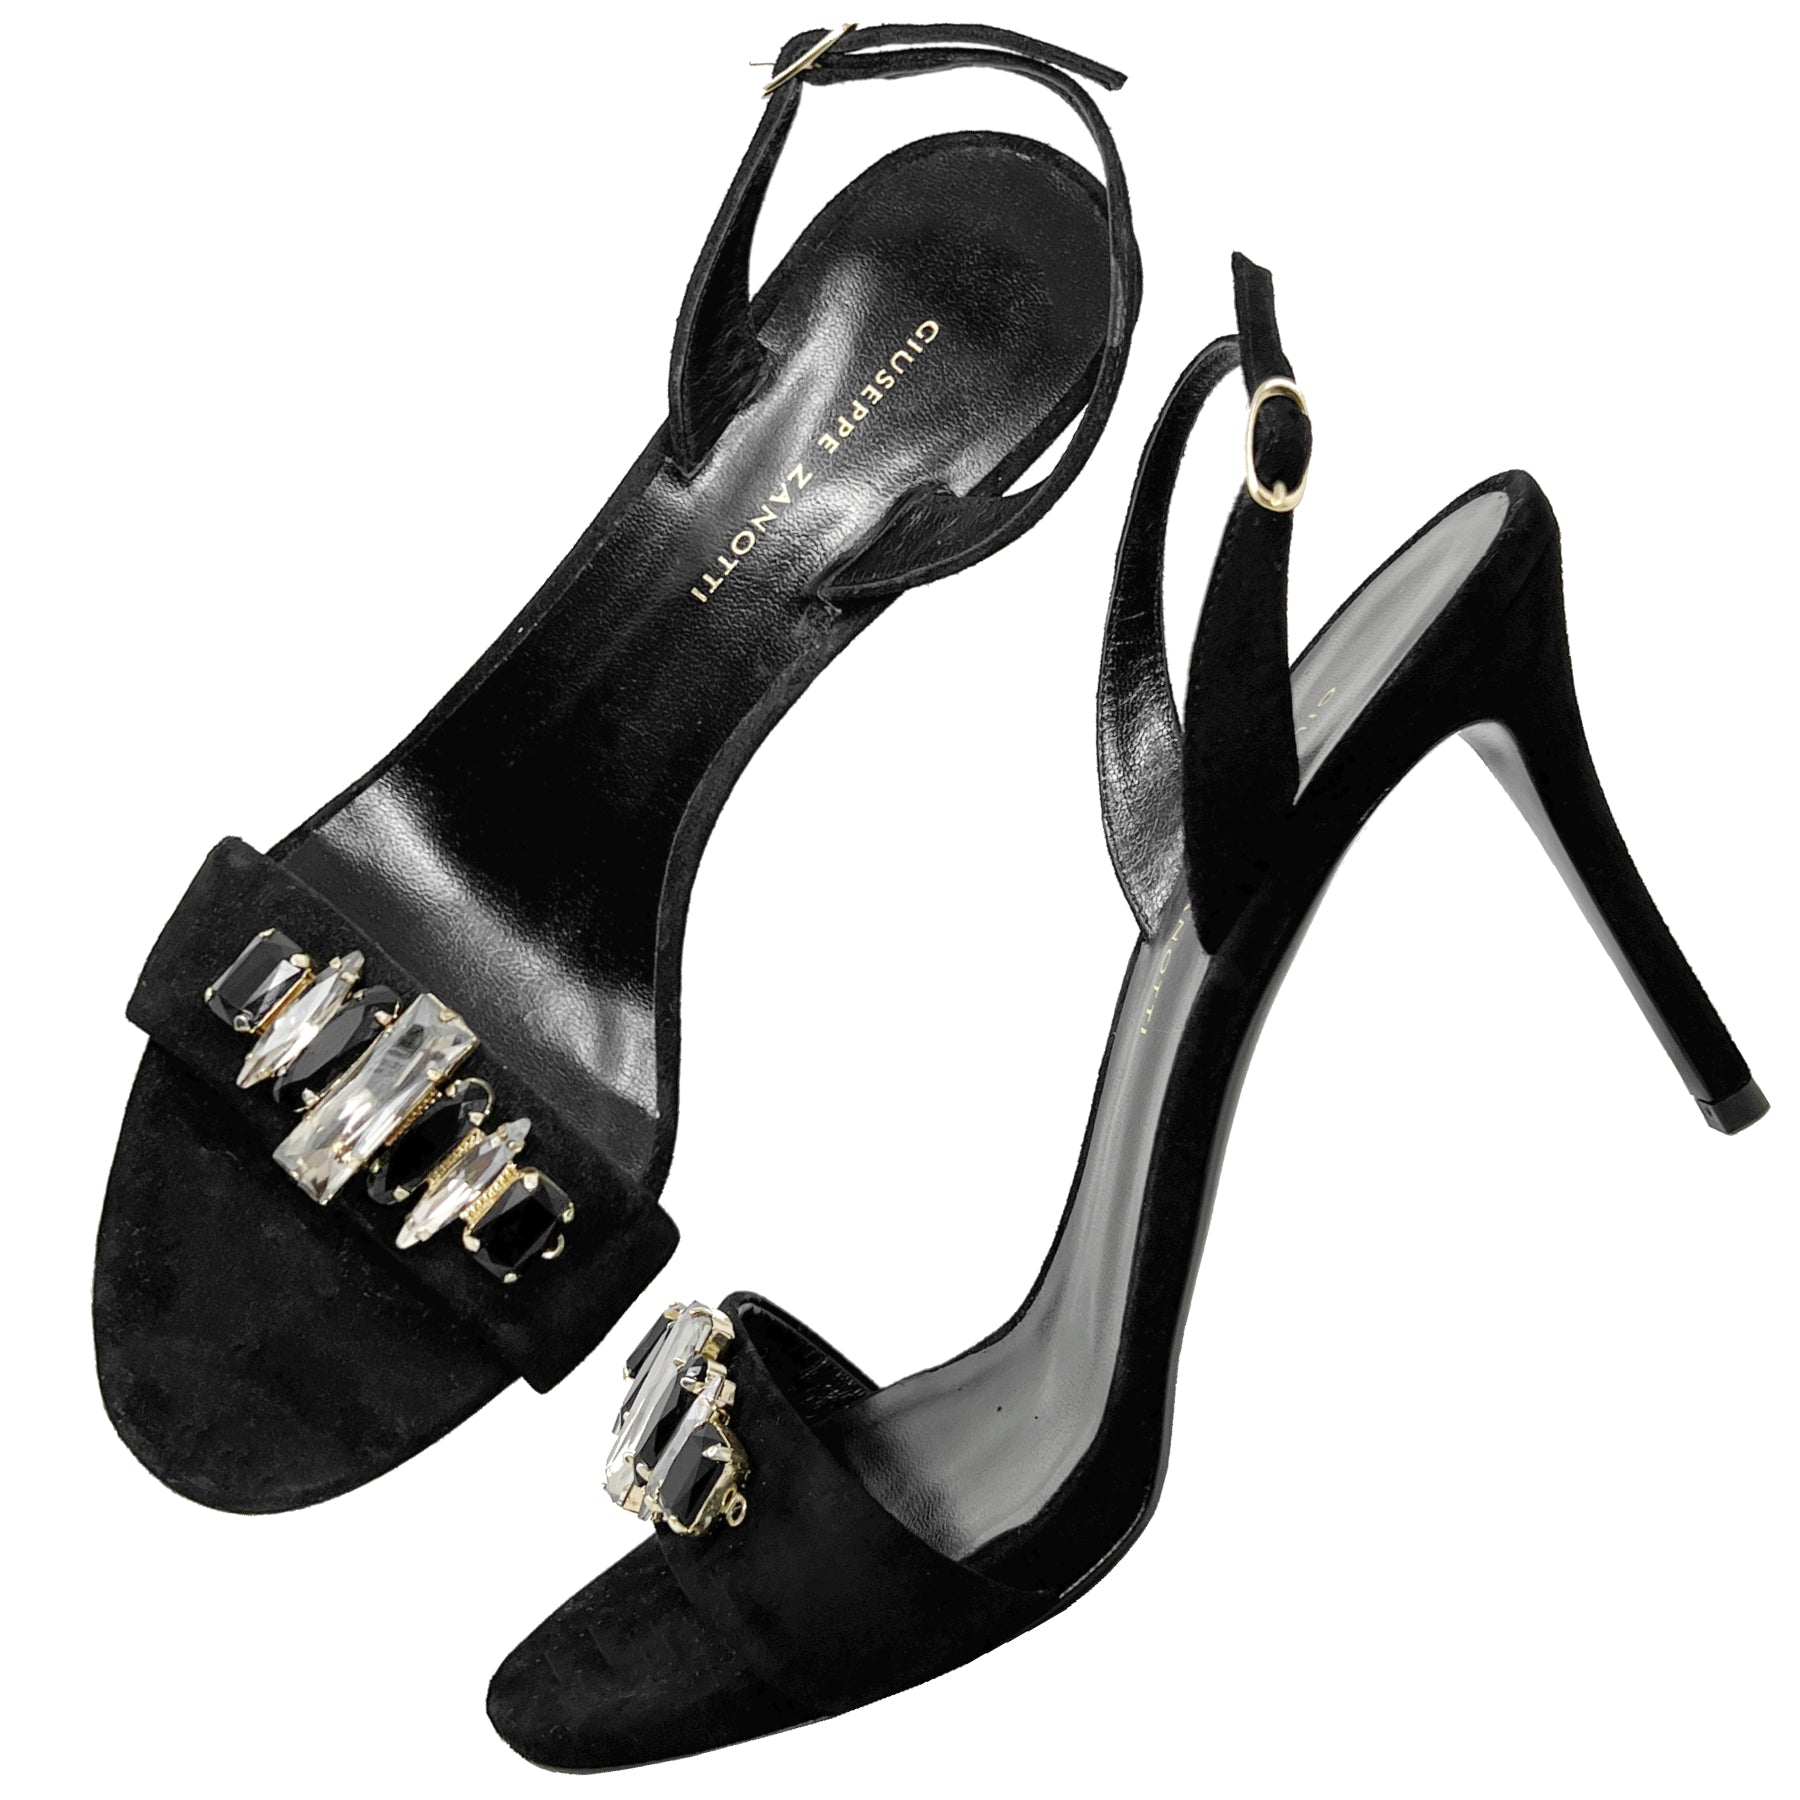 Giuseppe Zanotti Gem Crystal Embellished Black Suede Slingback High Heel Sandals